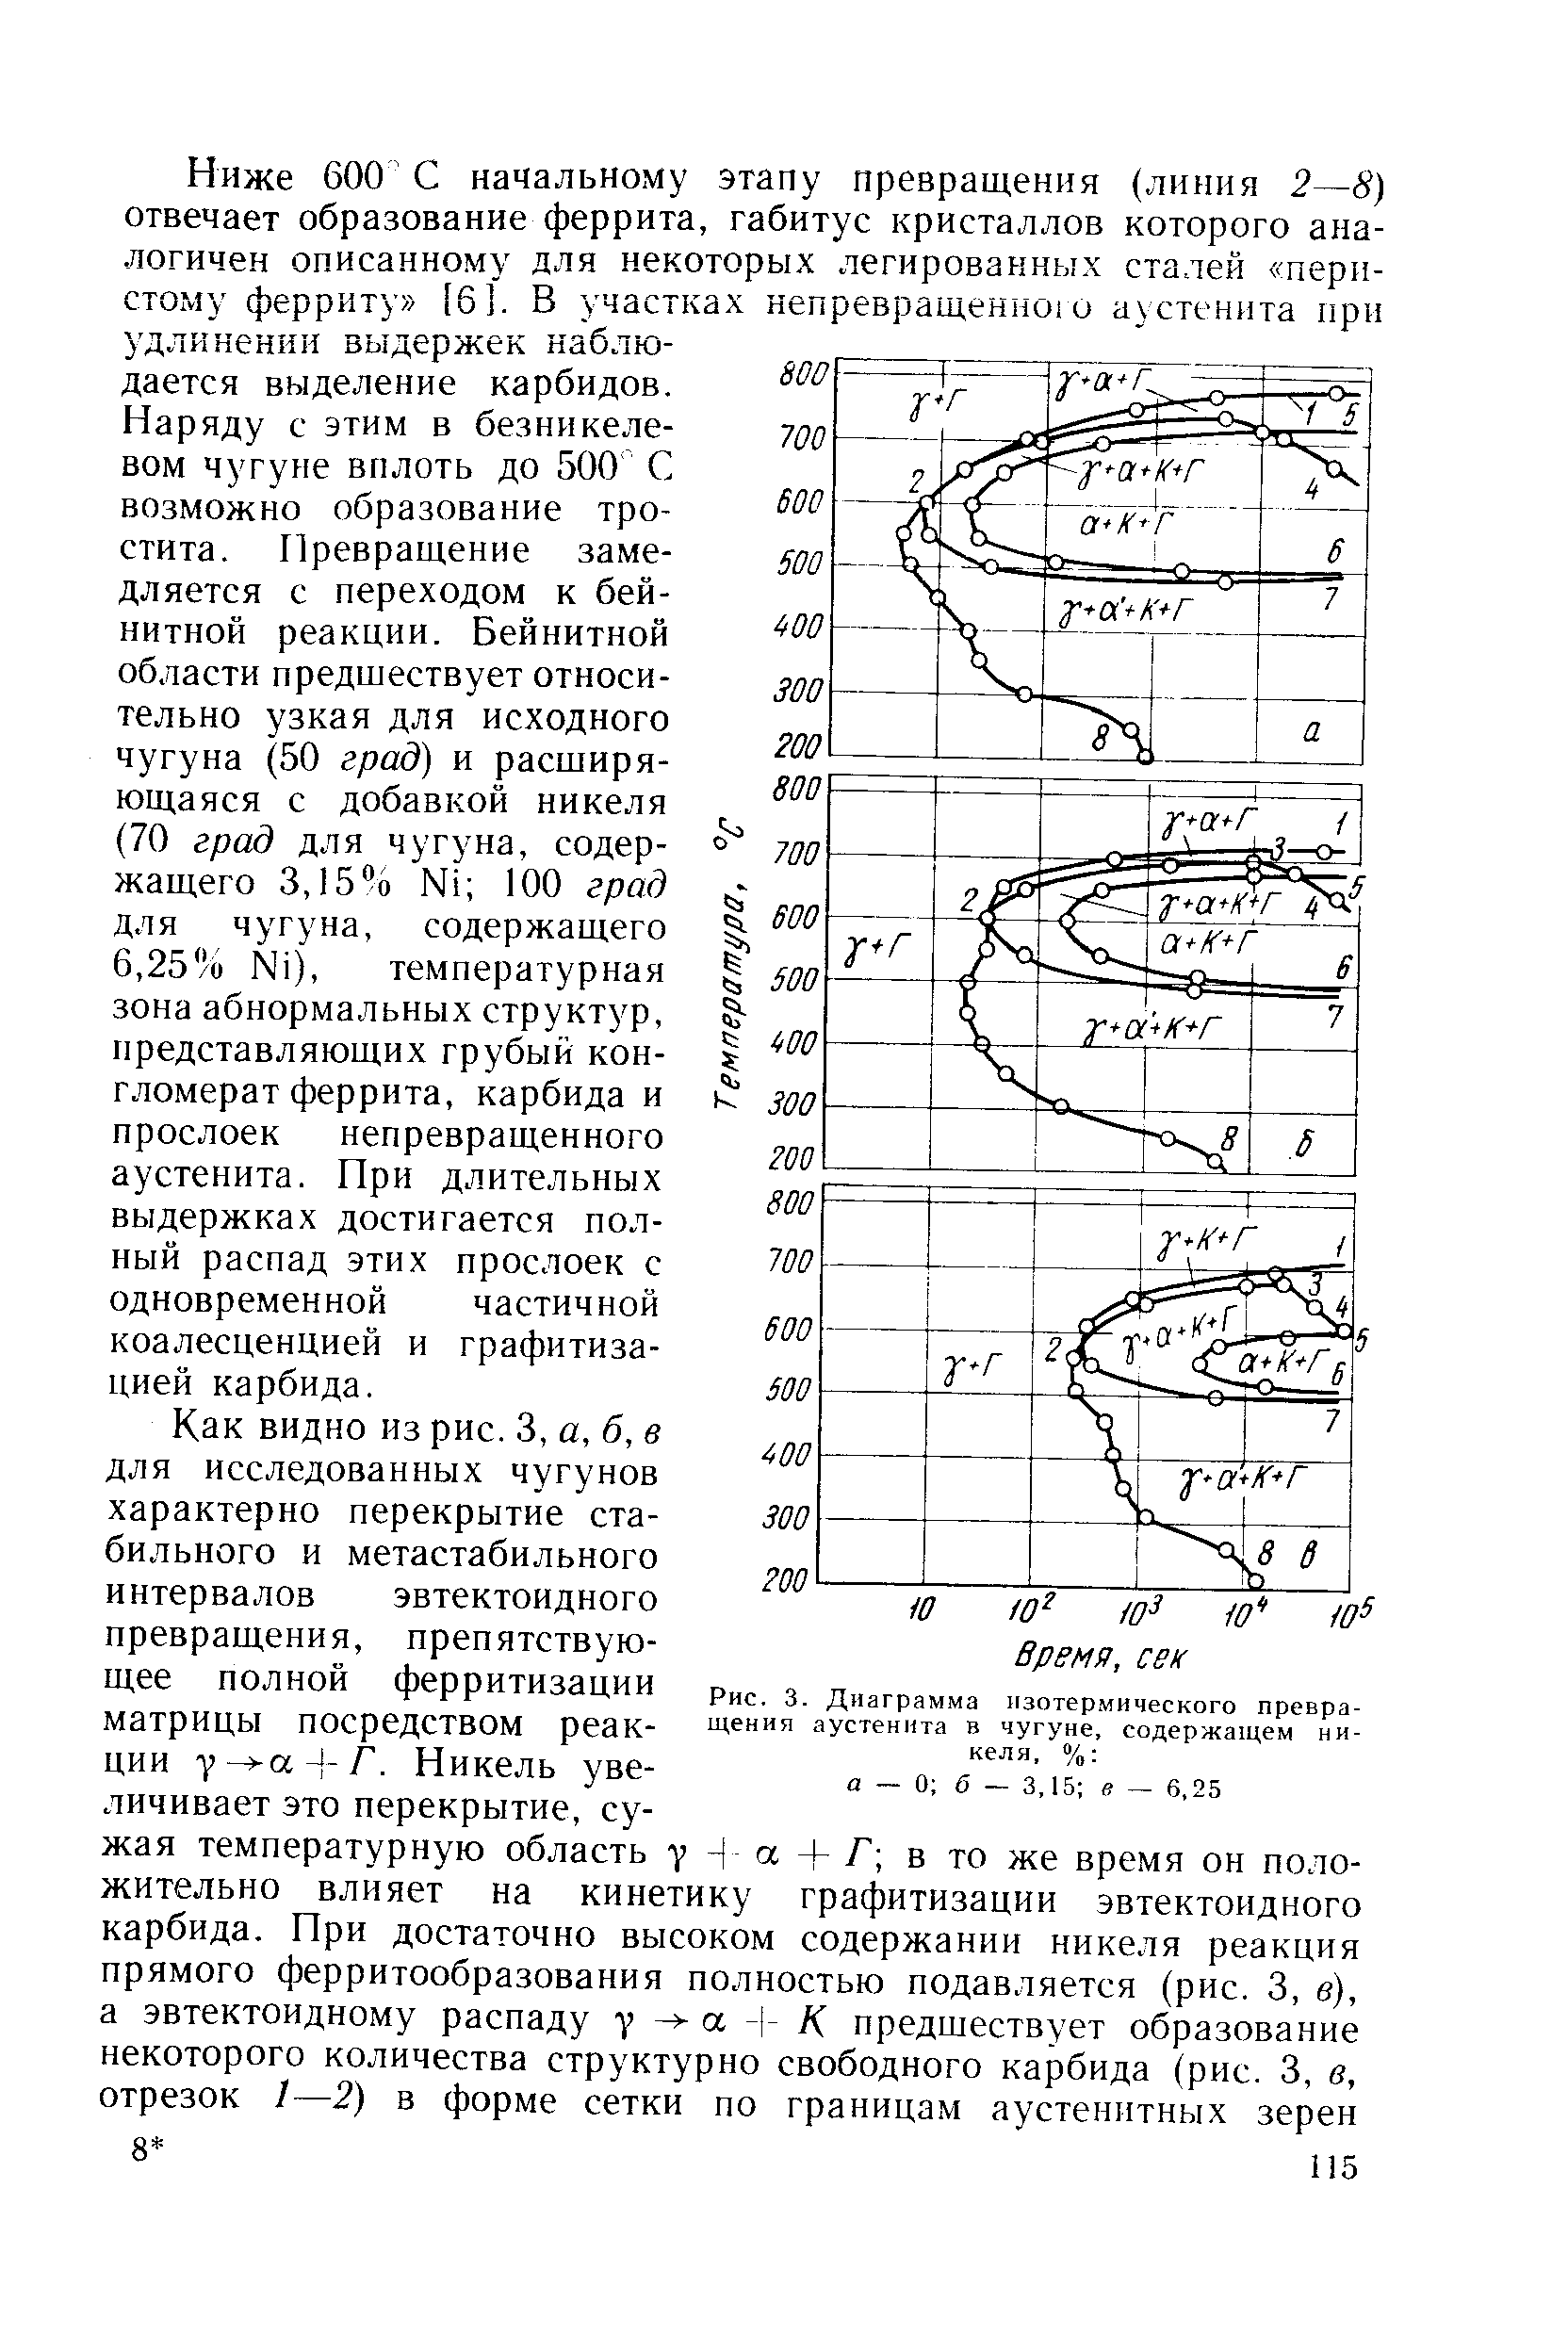 Рис. 3. Диаграмма изотермического превращения аустенита в чугуне, содержащем никеля, % а 0 6 — 3,15 — 6,25
